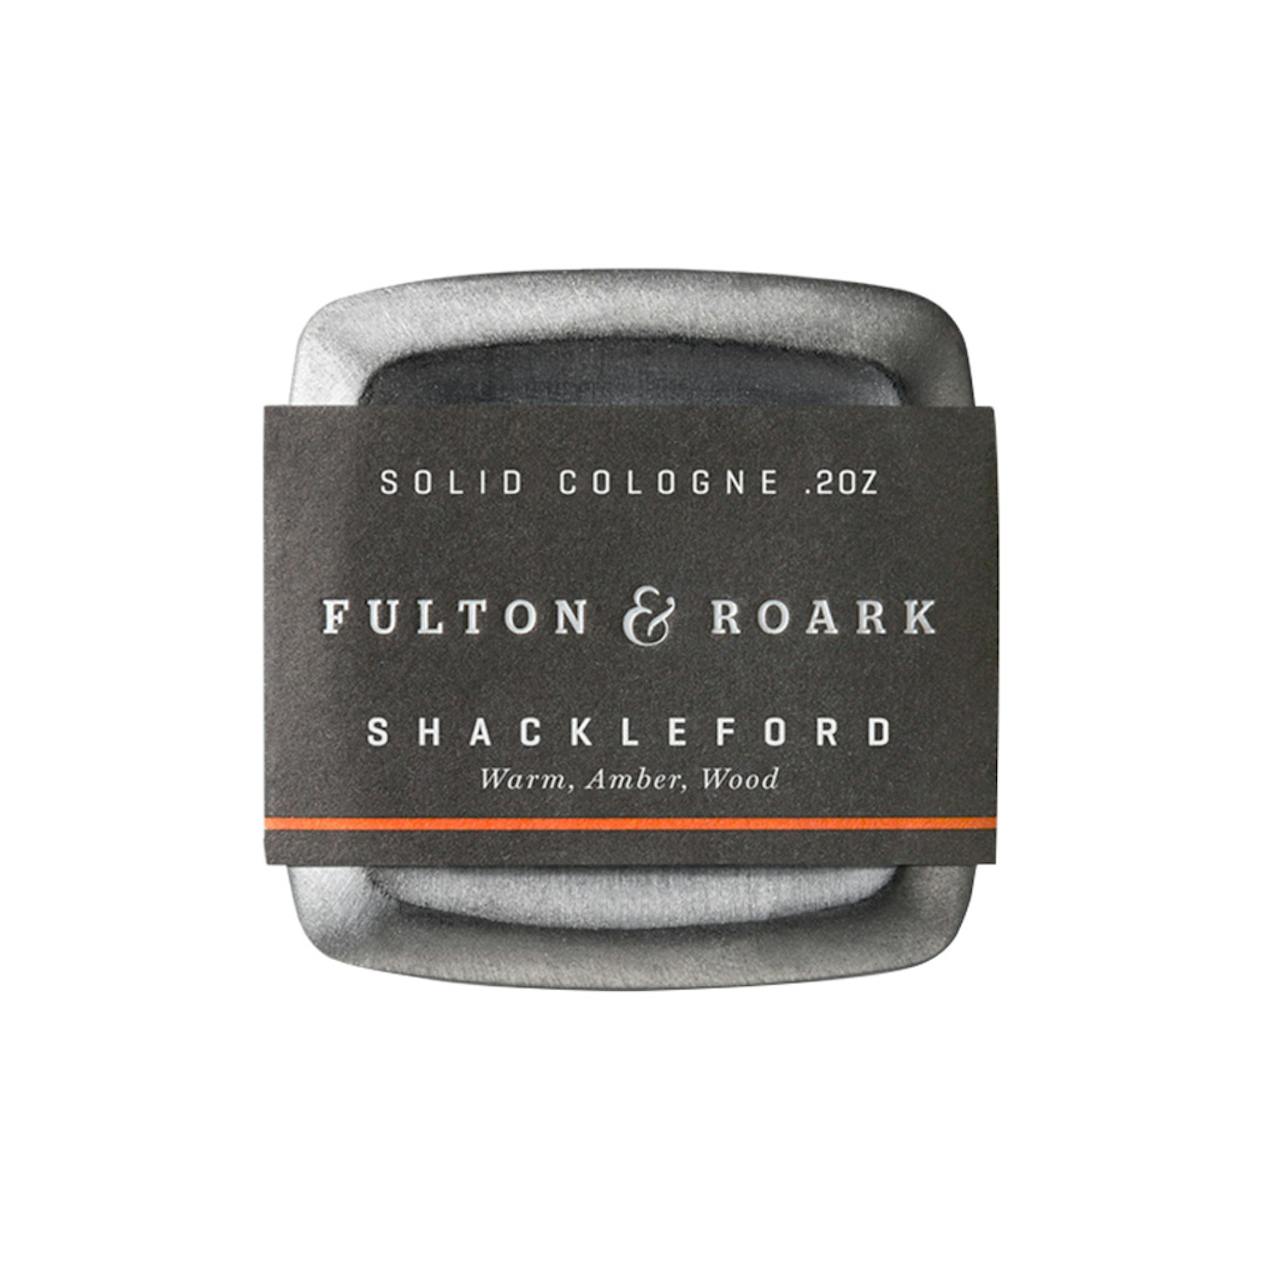 Fulton & Roark Shackleford Solid Cologne